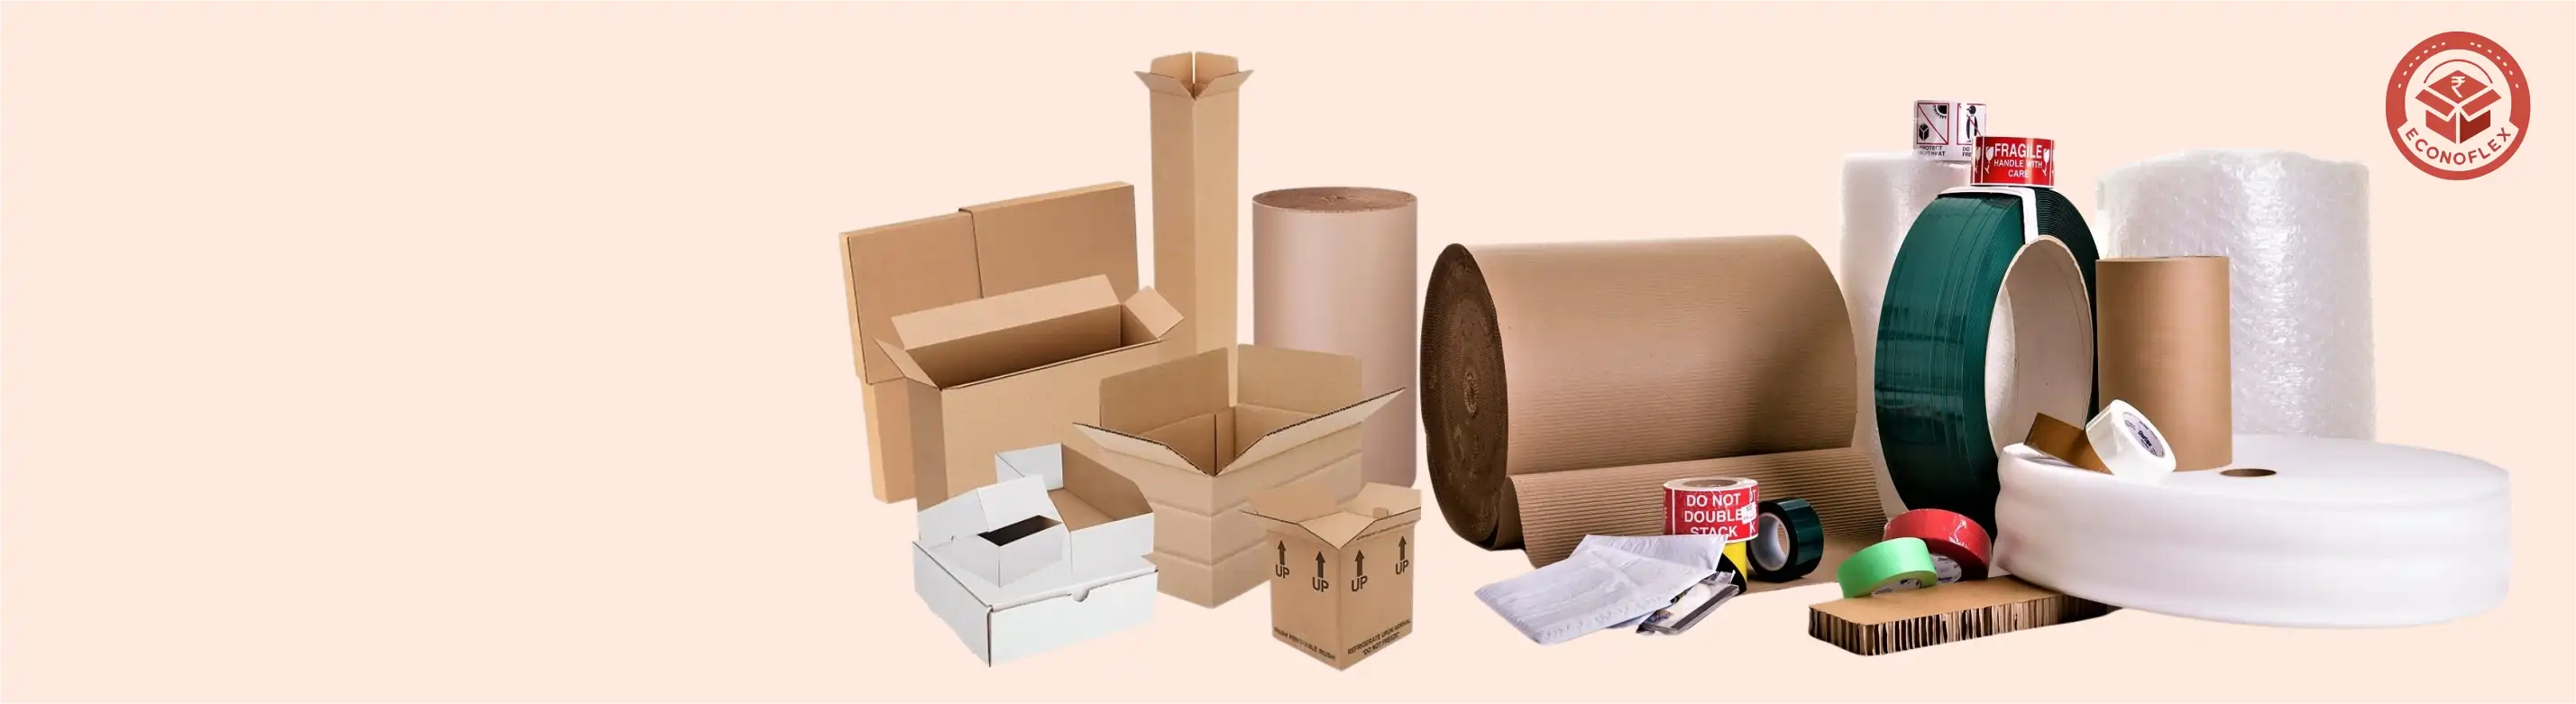 U-Pack Packaging Material